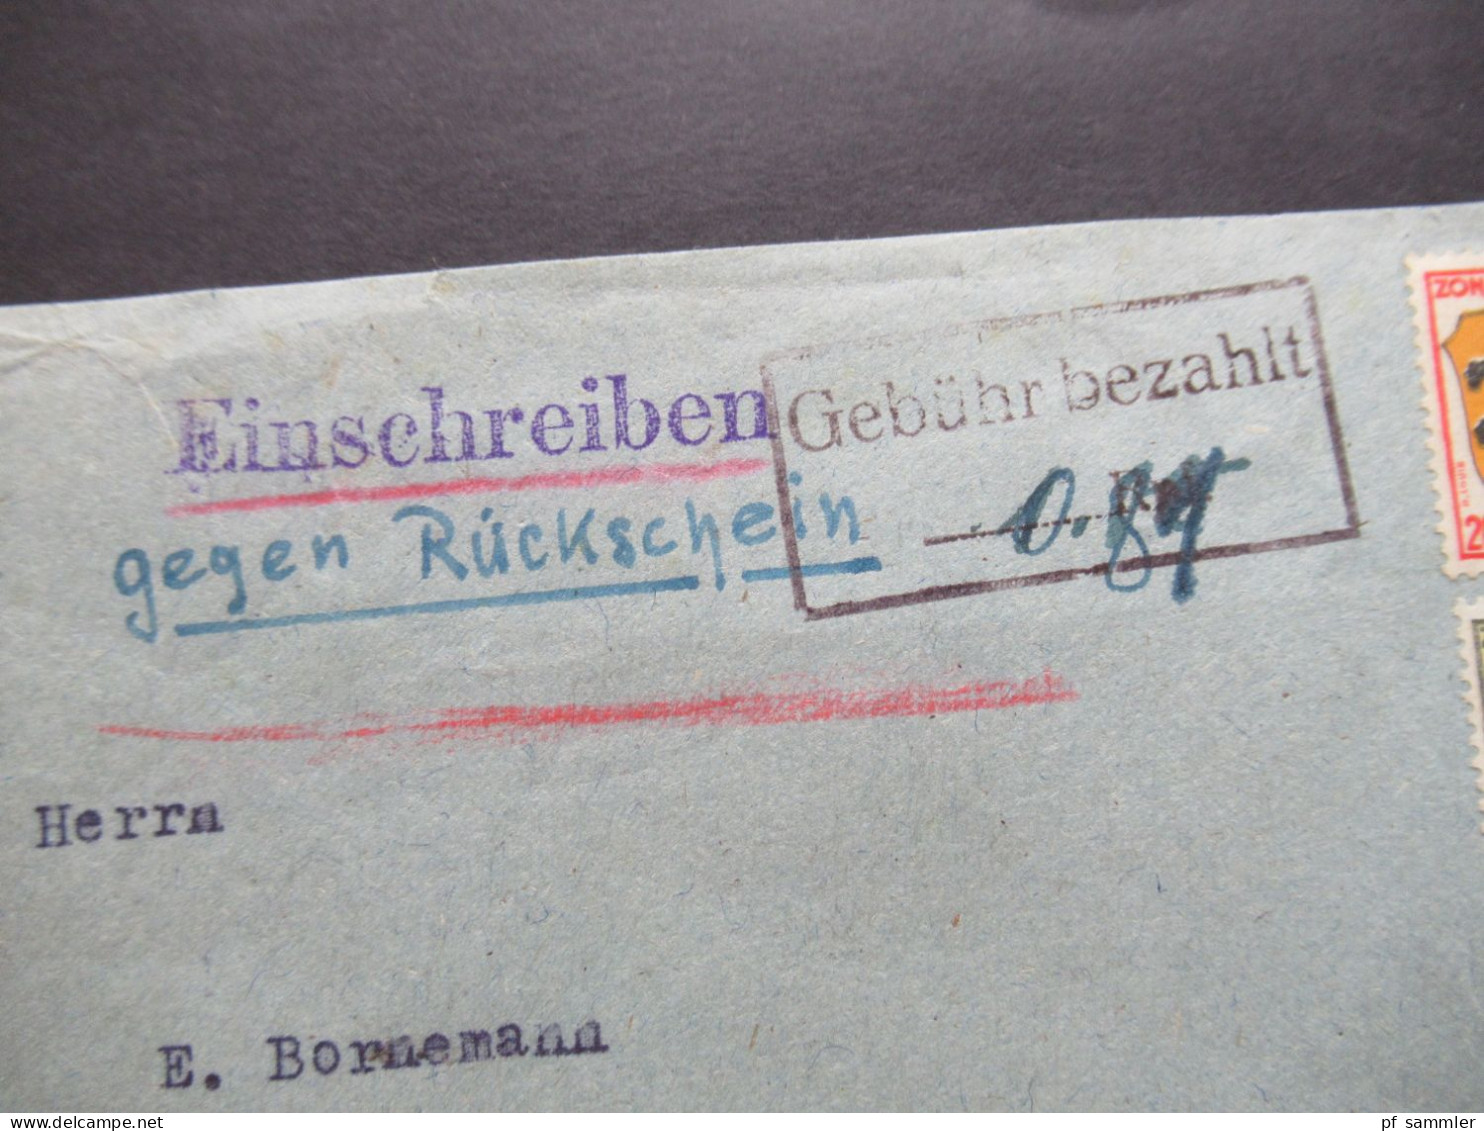 1947 Französische Zone MiF Einschreiben Gegen Rückschein / Gebühr Bezahlt Stempel Unterreichenbach (Kr Calw) Teilbarfran - Andere & Zonder Classificatie